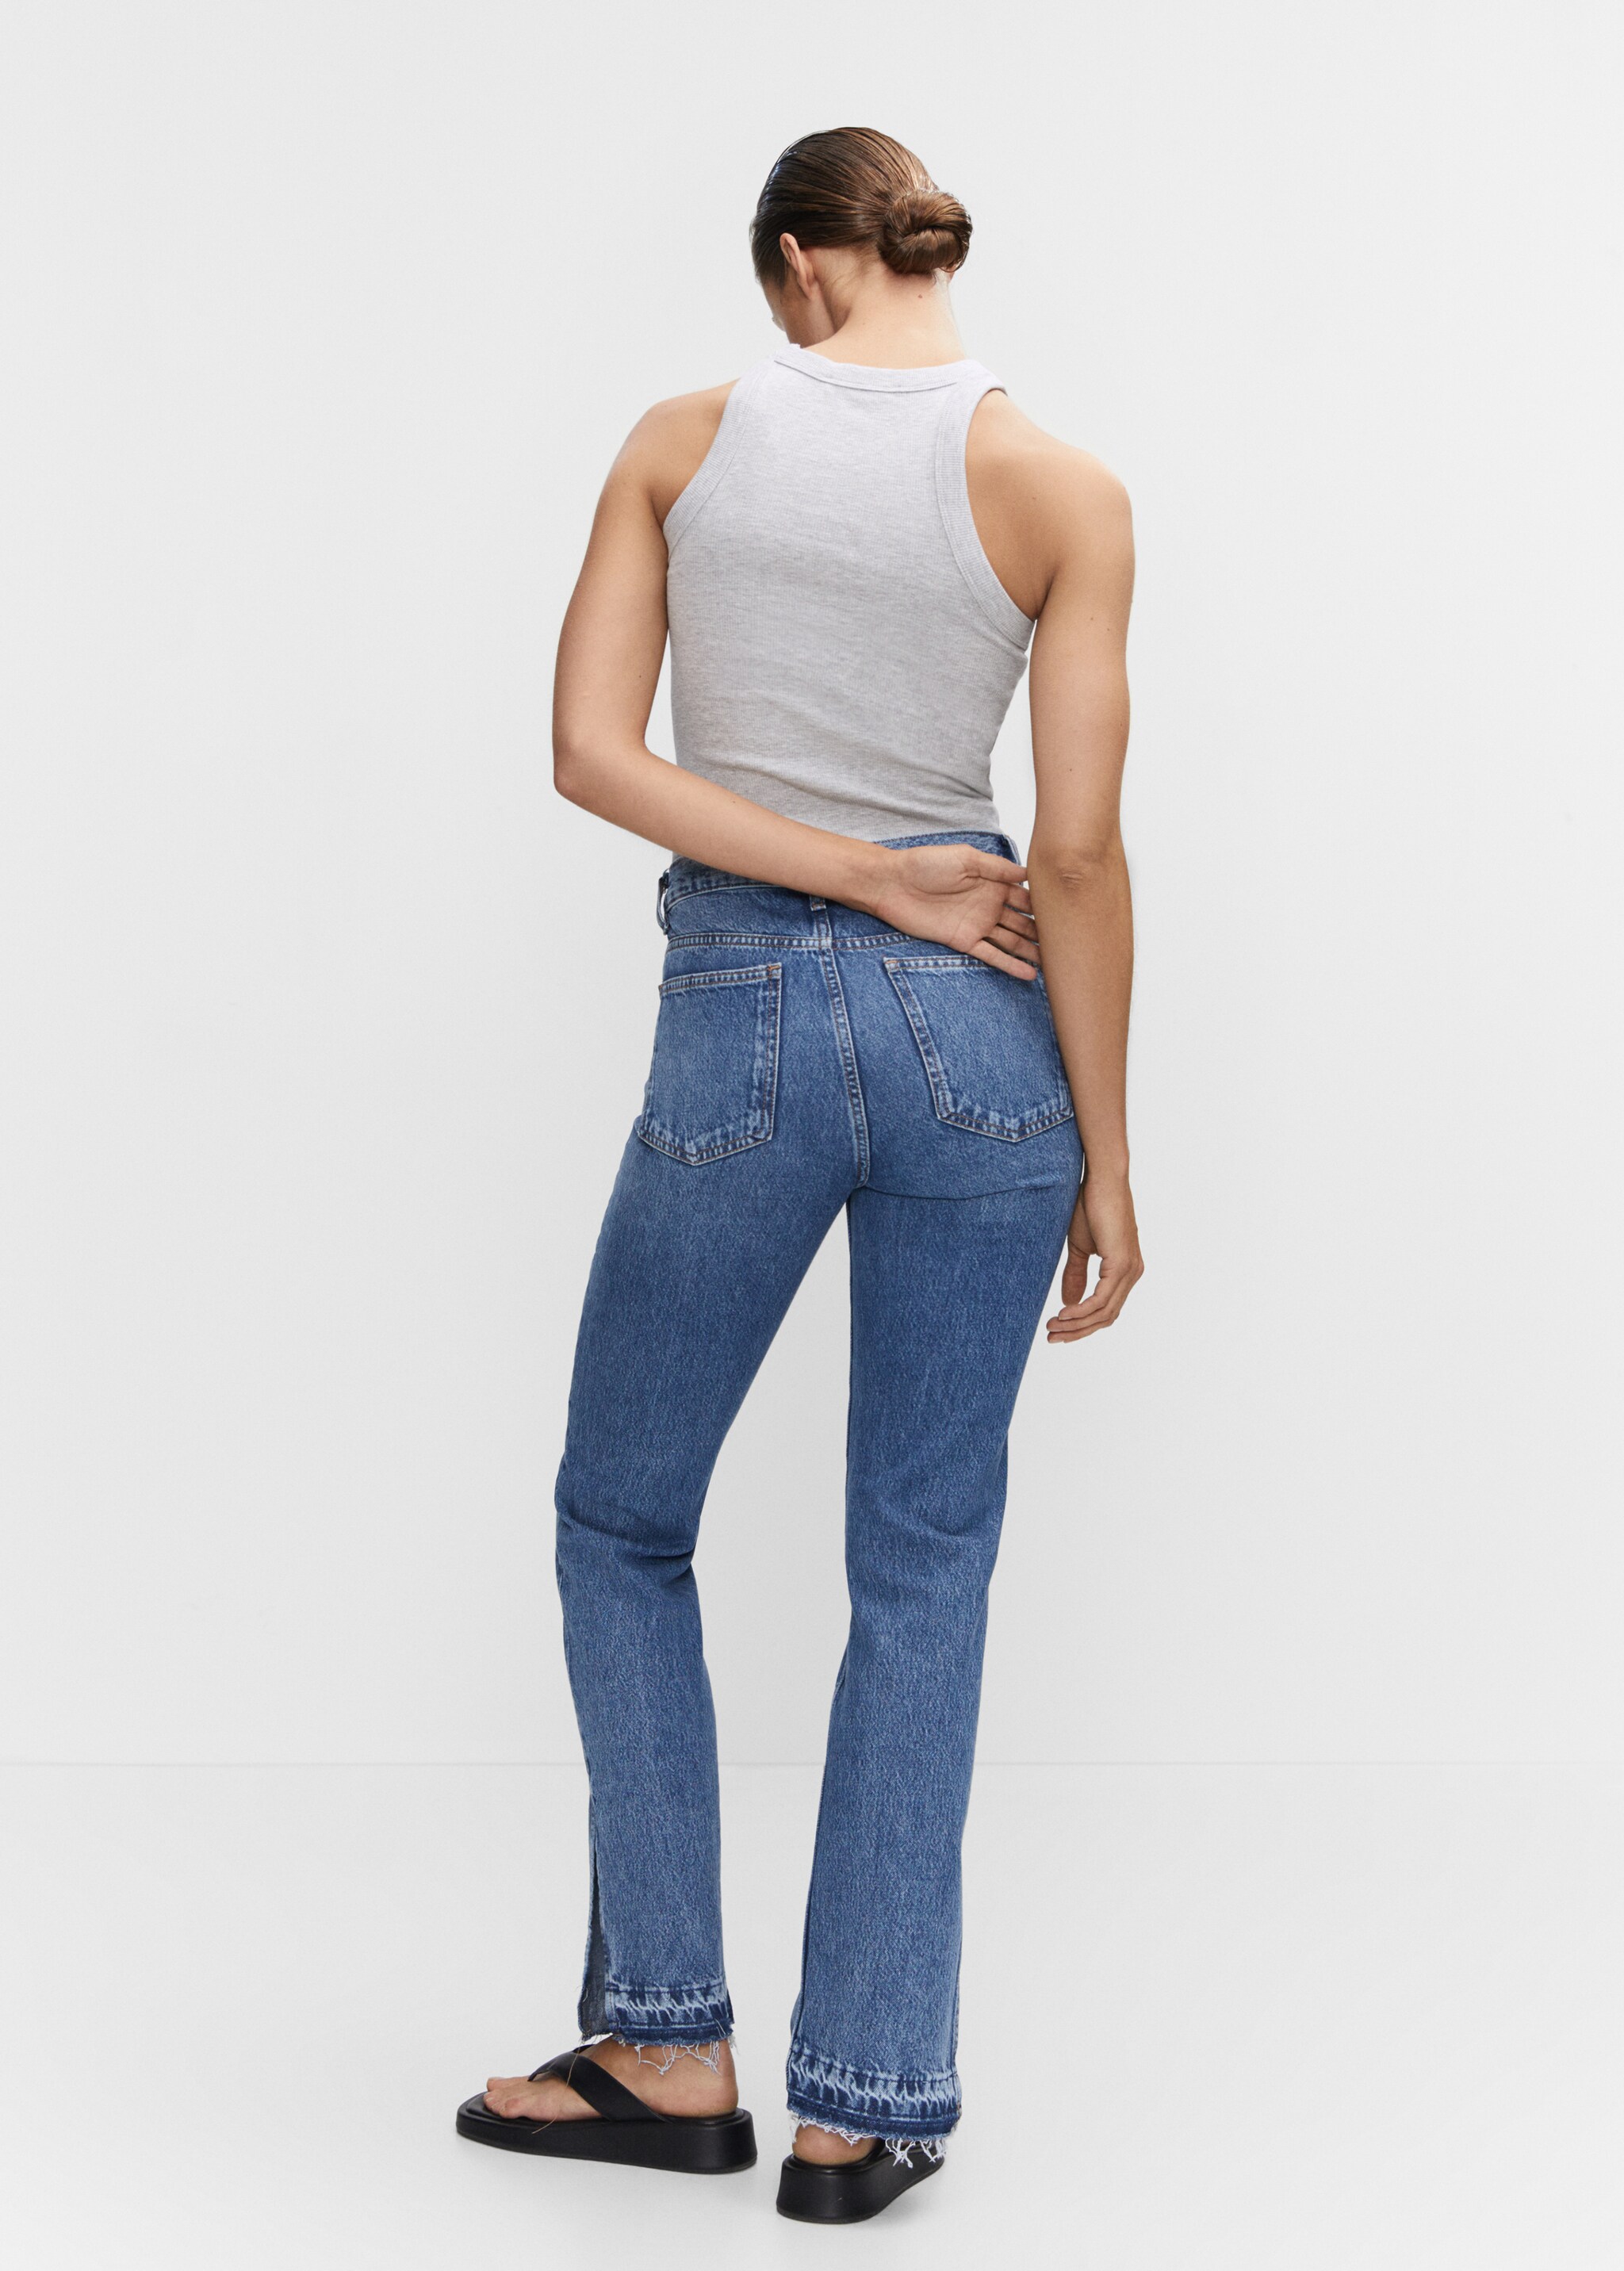 Jeans rectos tiro alto aberturas - Reverso del artículo